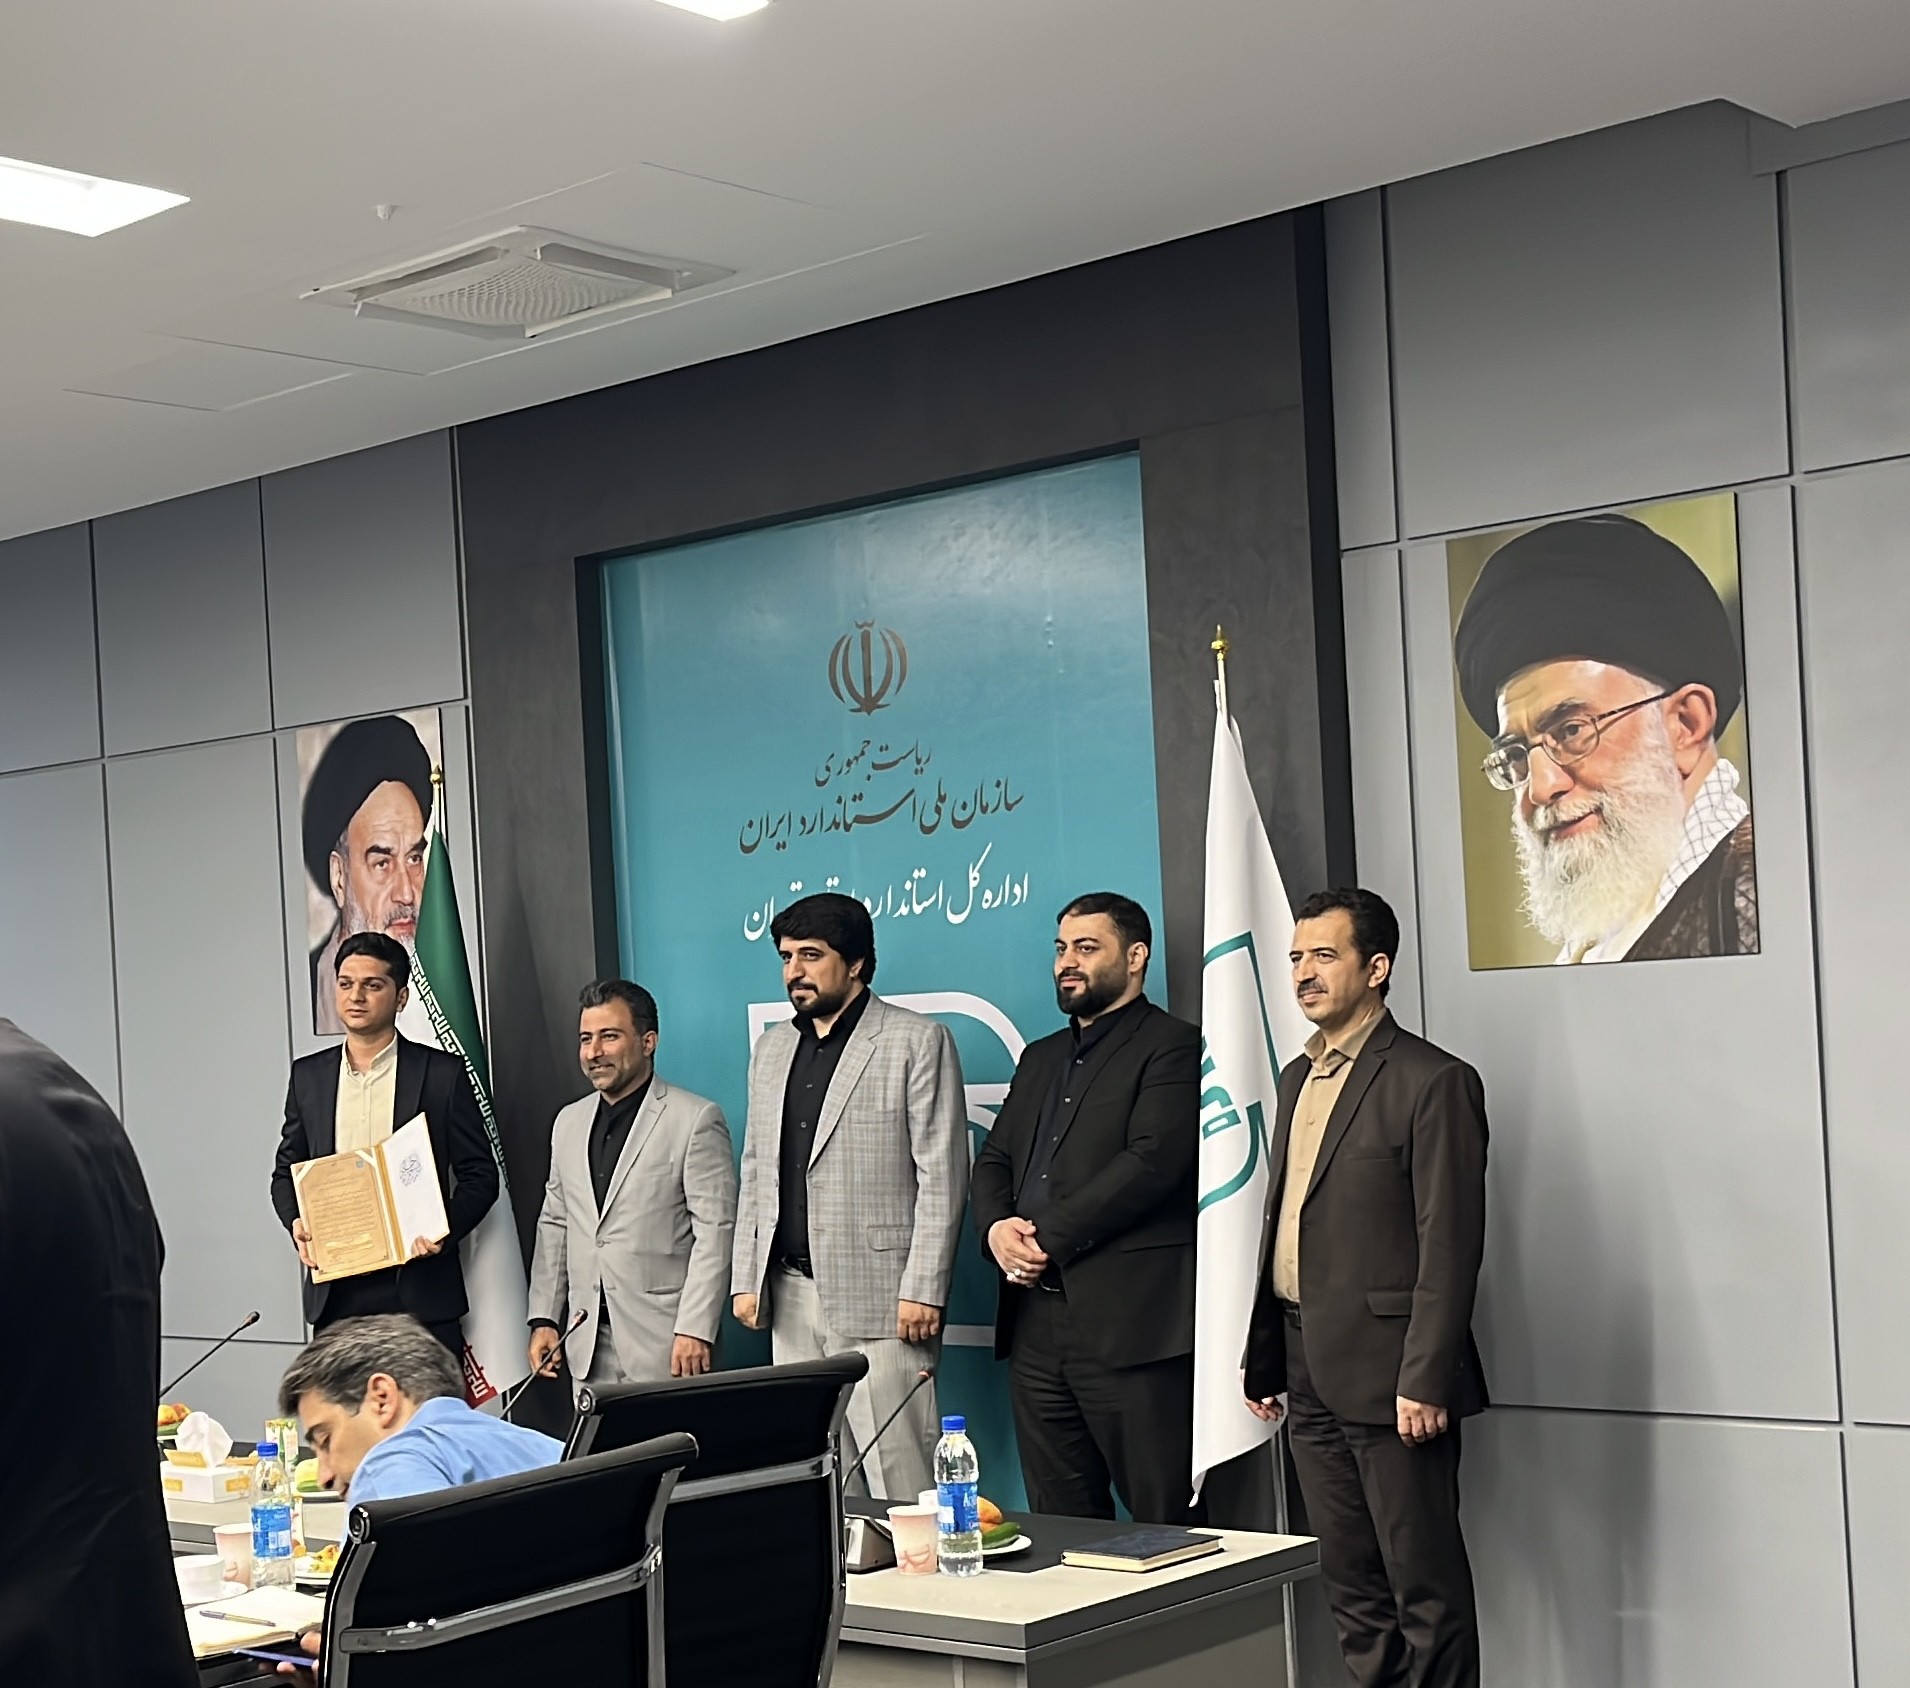 دریافت جایزه ملی کیفیت ایران توسط شرکت جویابهنود